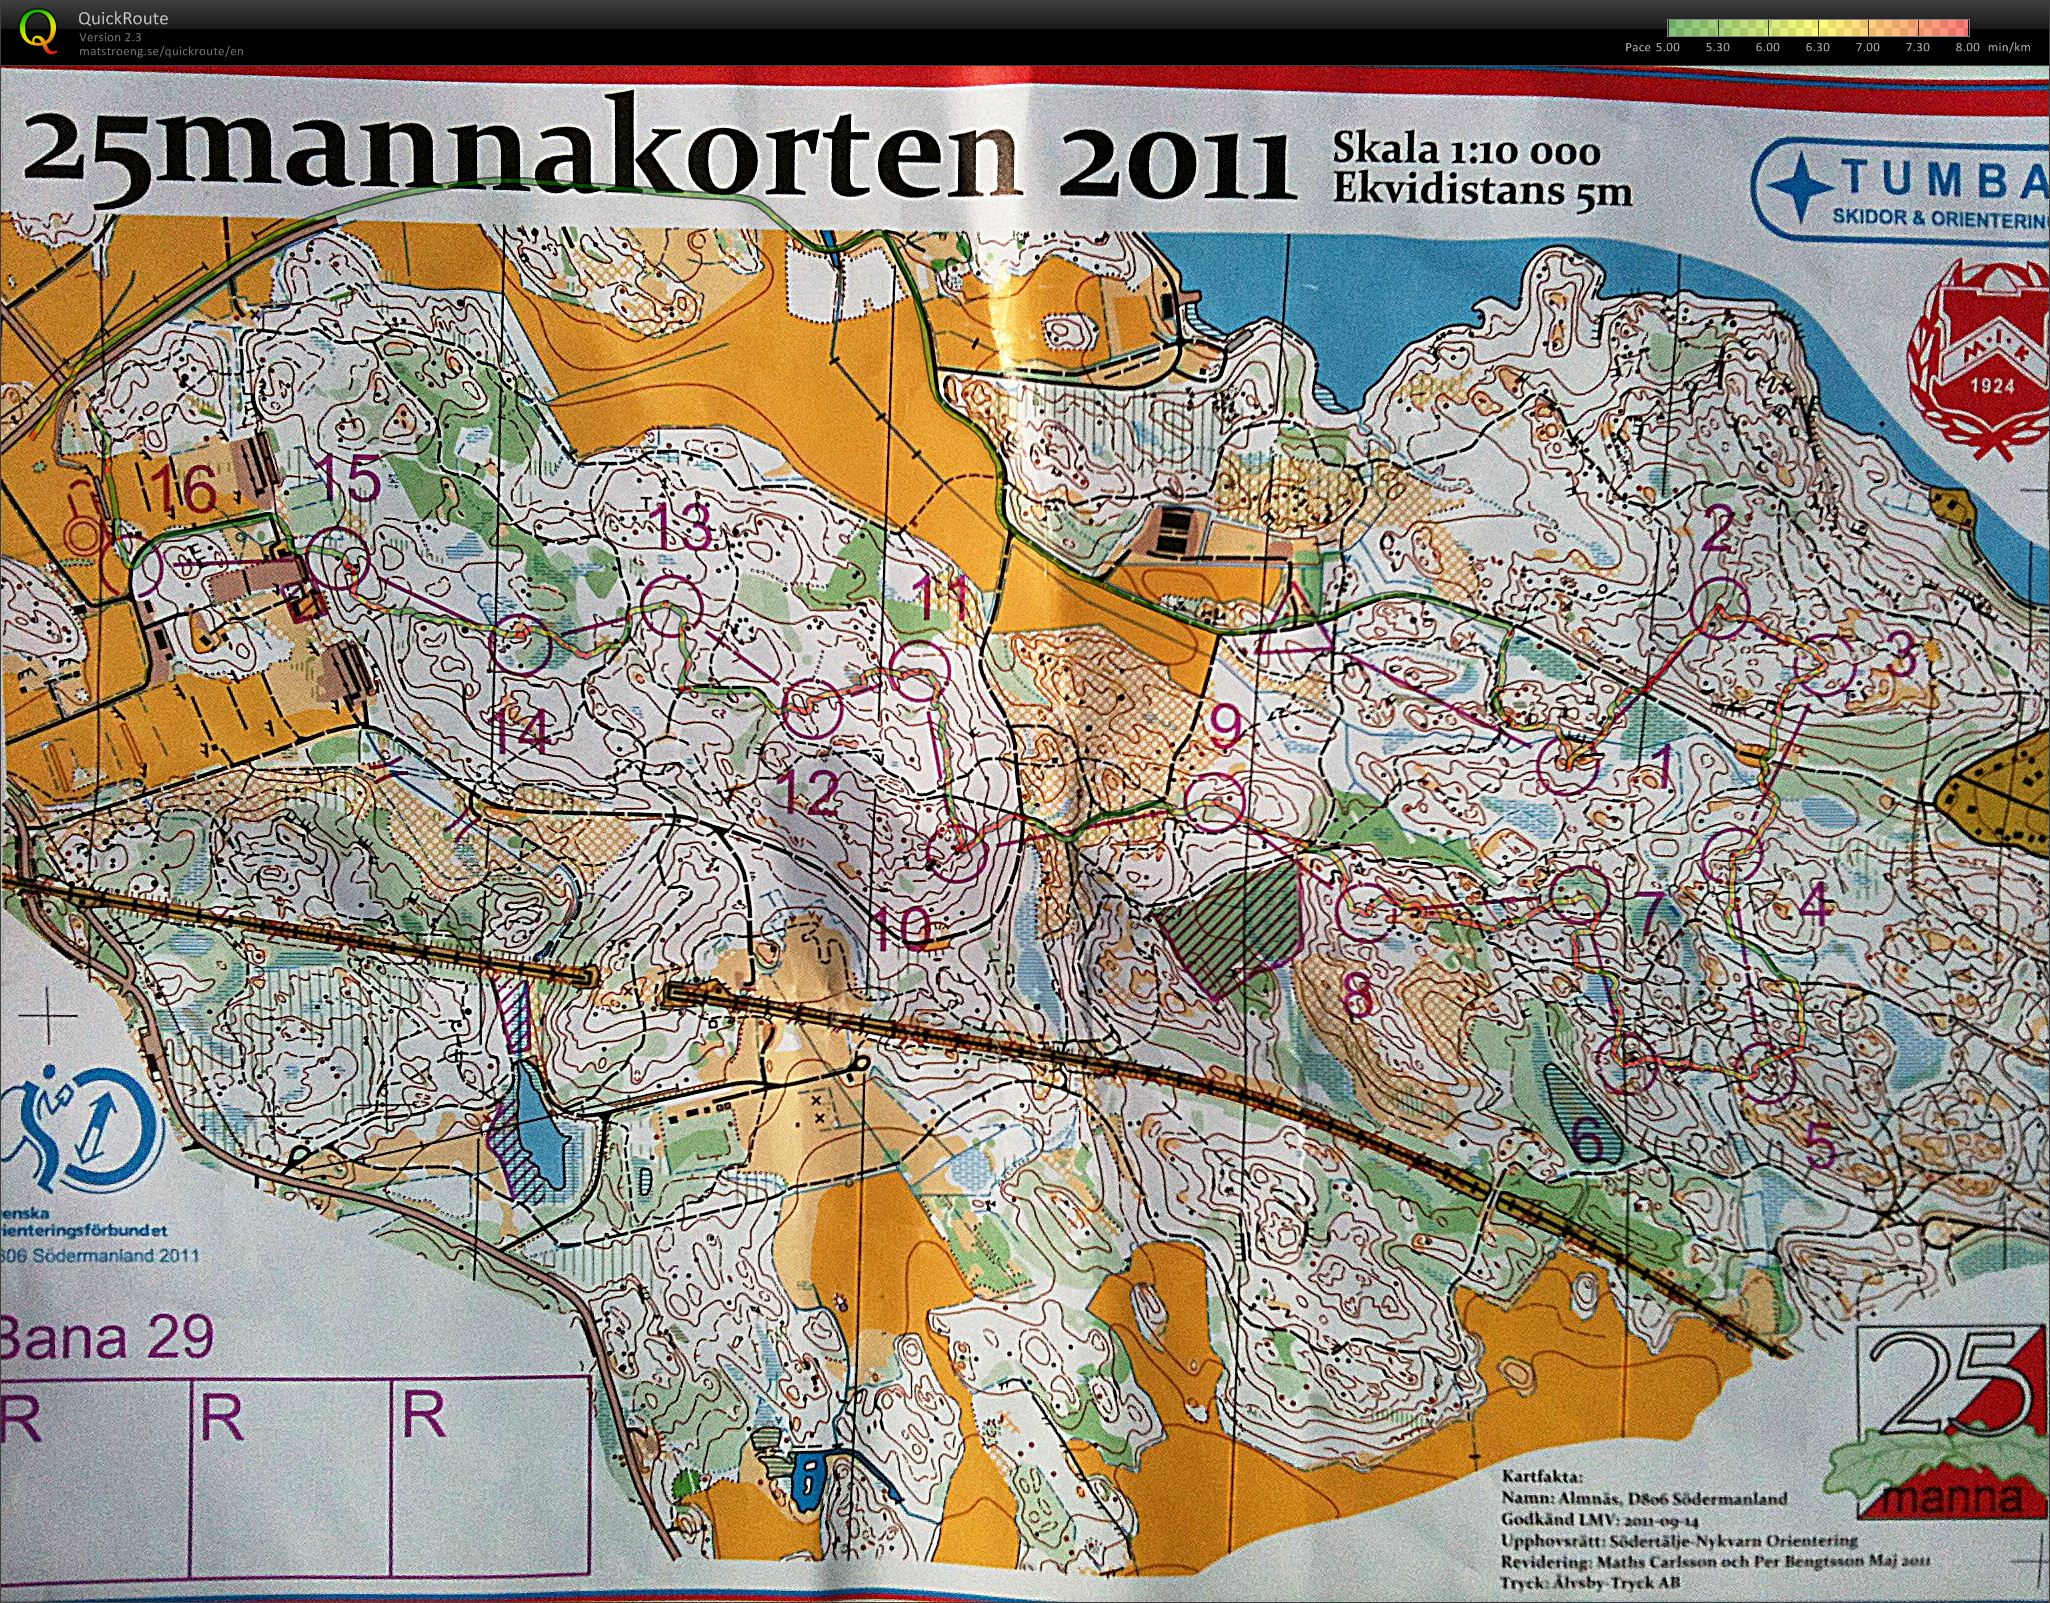 25mannakorten - H45 (09/10/2011)